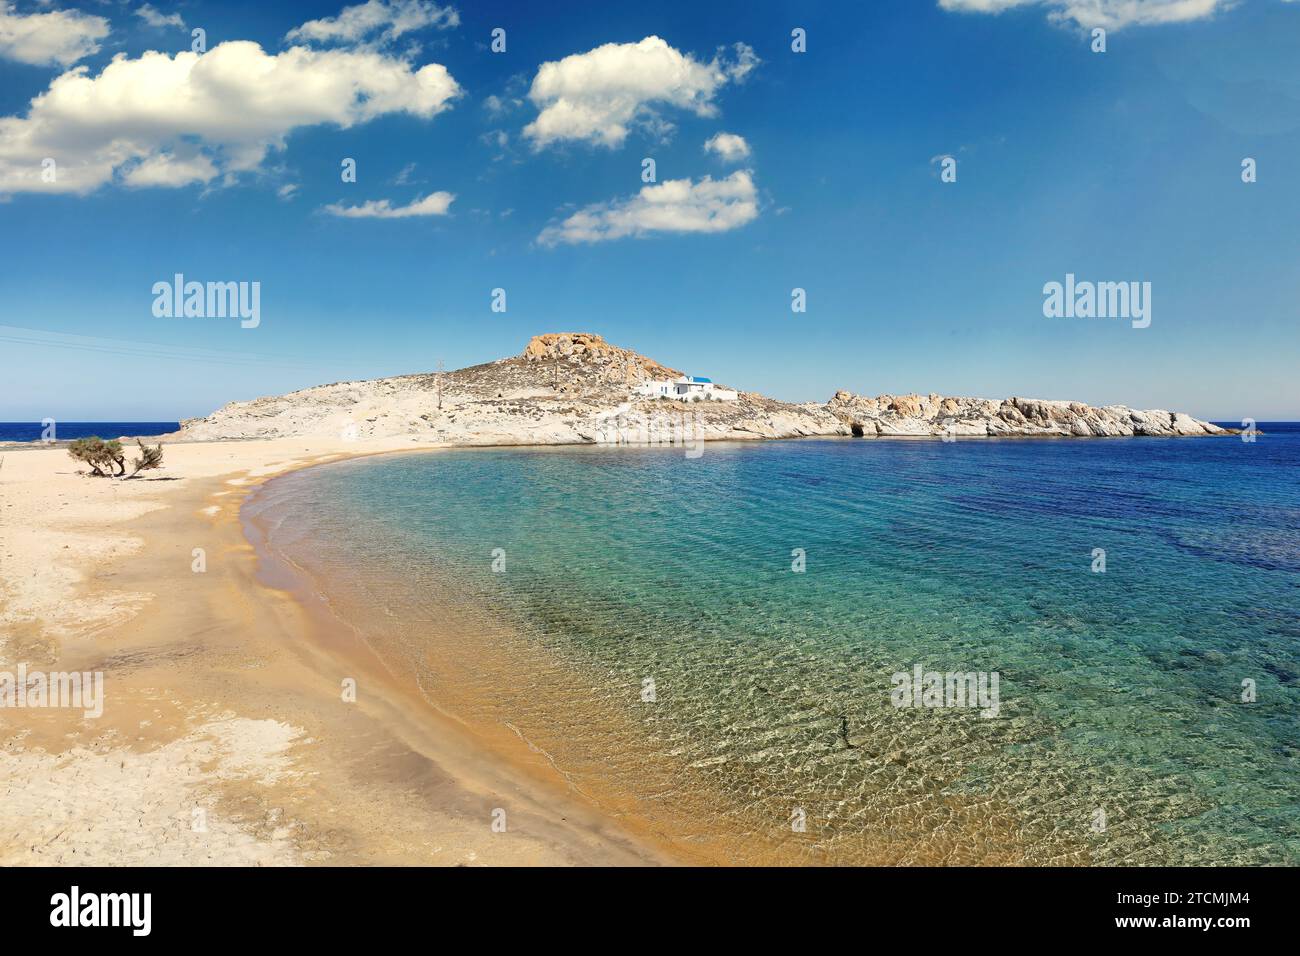 La plage de sable Agios Sostis avec la chapelle homonyme de l'île de Serifos dans les Cyclades, Grèce Banque D'Images